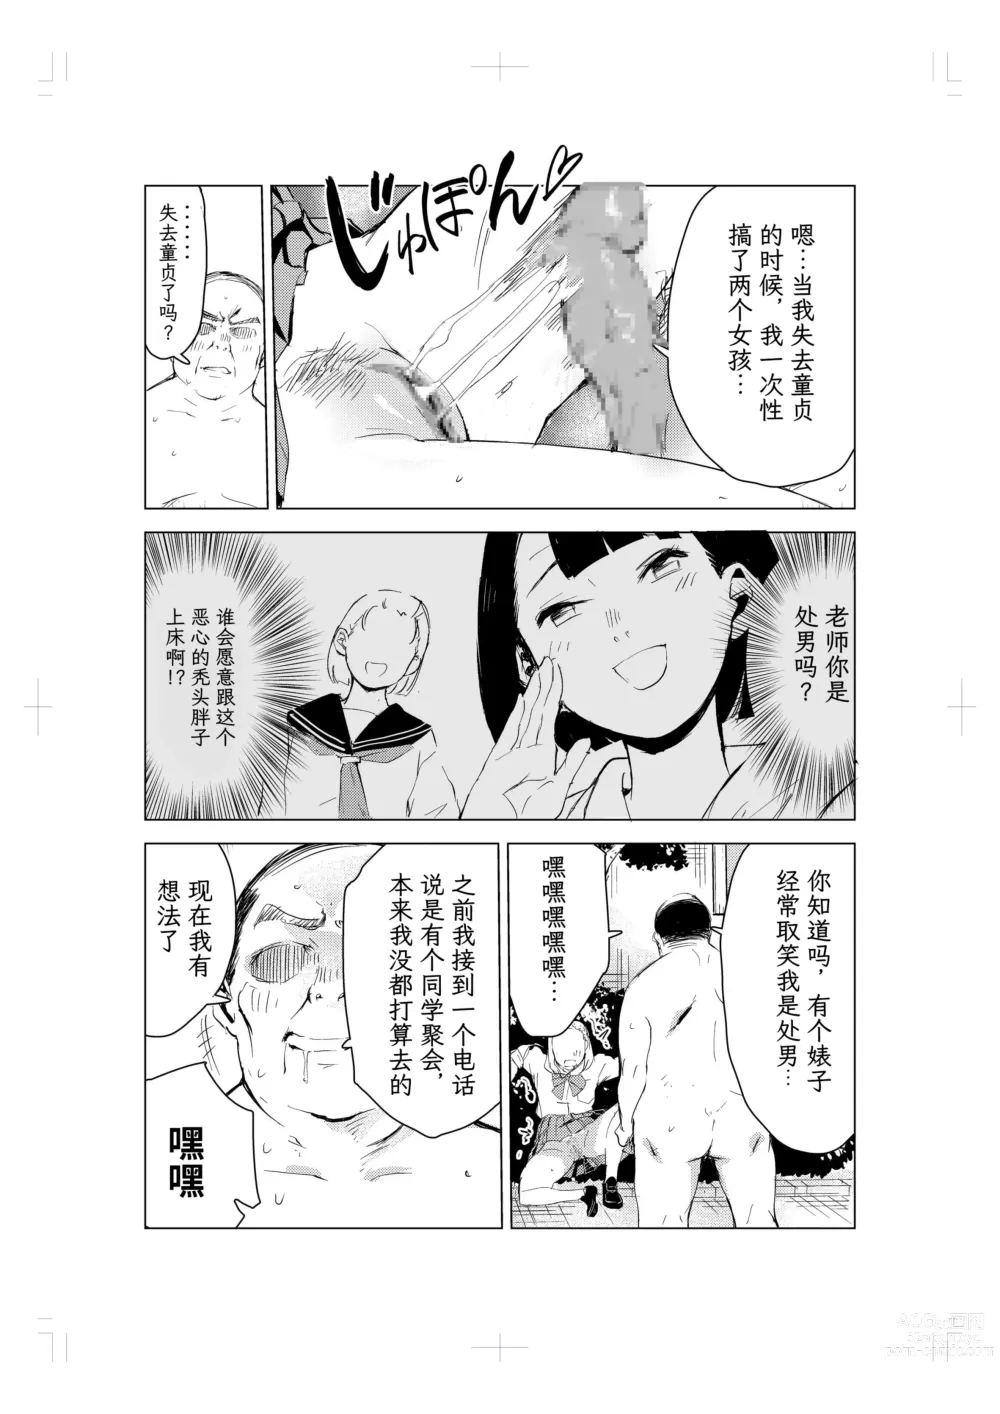 Page 54 of doujinshi 40-sai no Mahoutukai